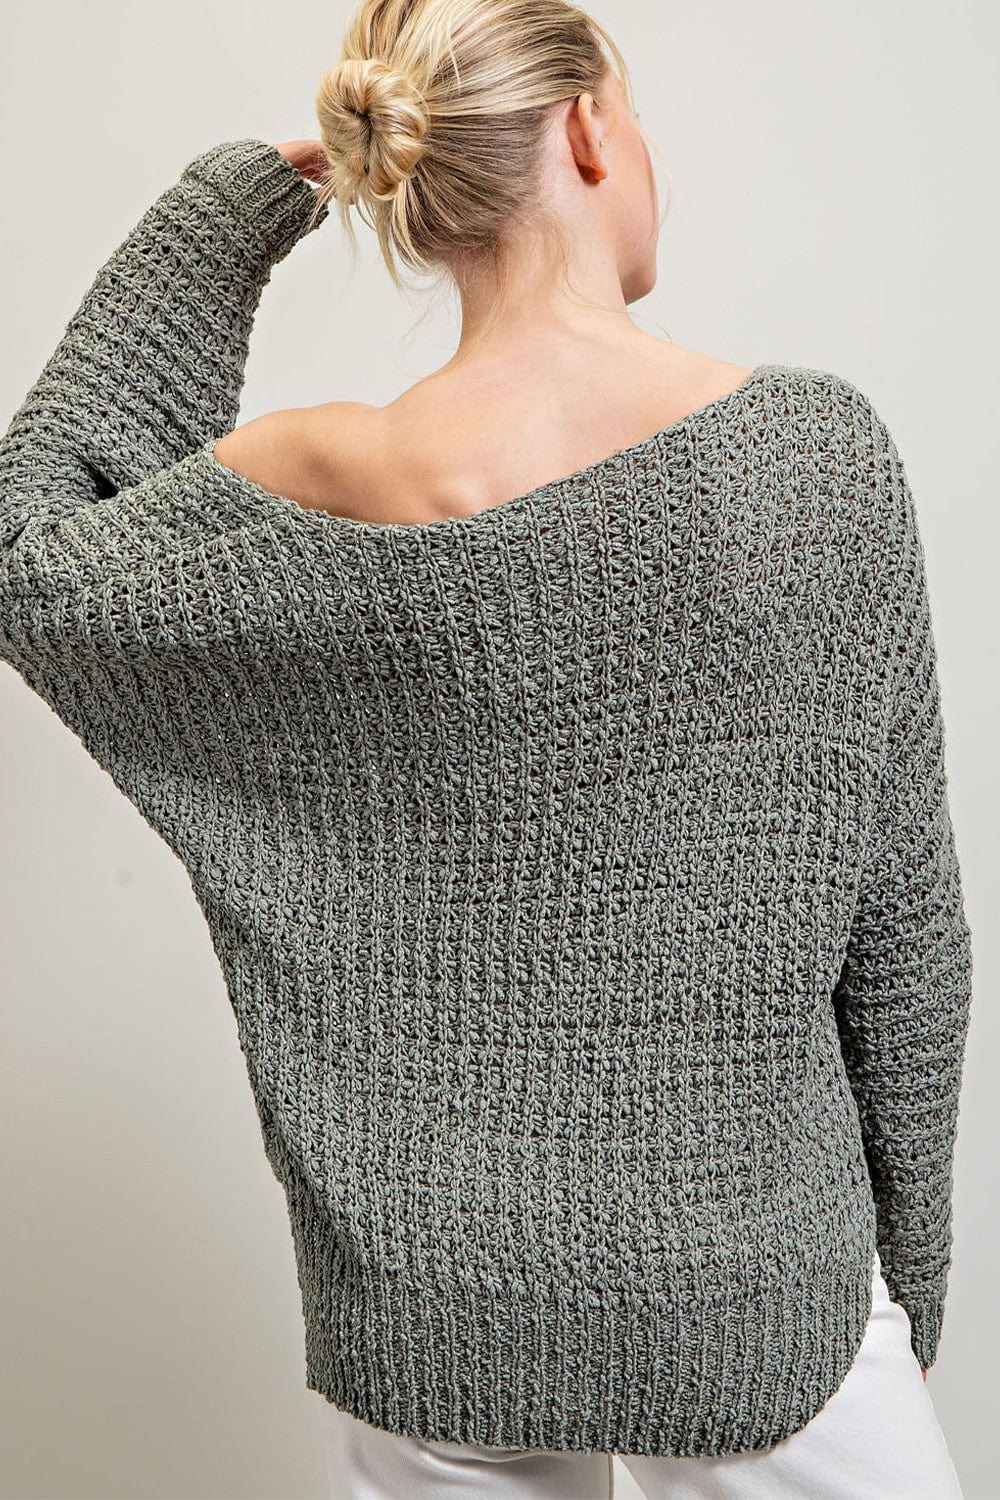 Envy Stylz Boutique Sage Knit Sweater